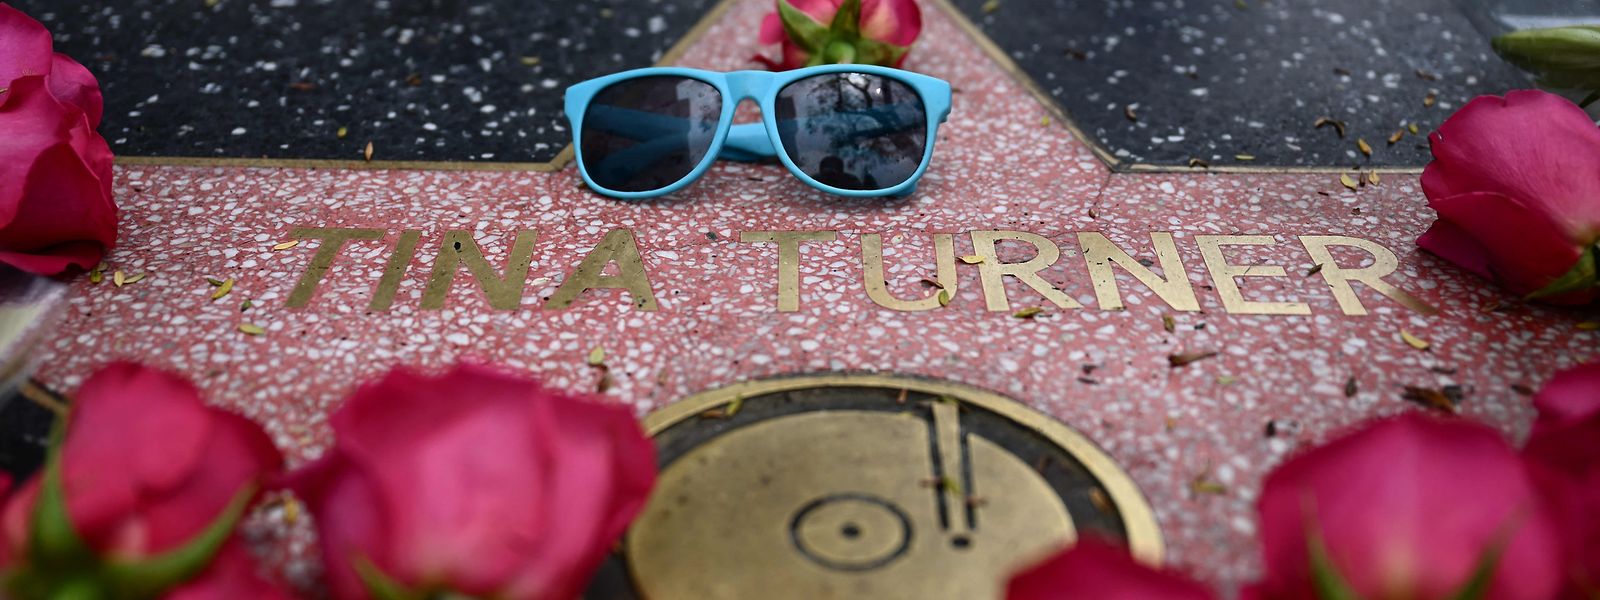 Tina Turner, die in den 1960er-Jahren das Publikum begeisterte und über fünf Jahrzehnte hinweg Hits veröffentlichte, ist im Alter von 83 Jahren gestorben.